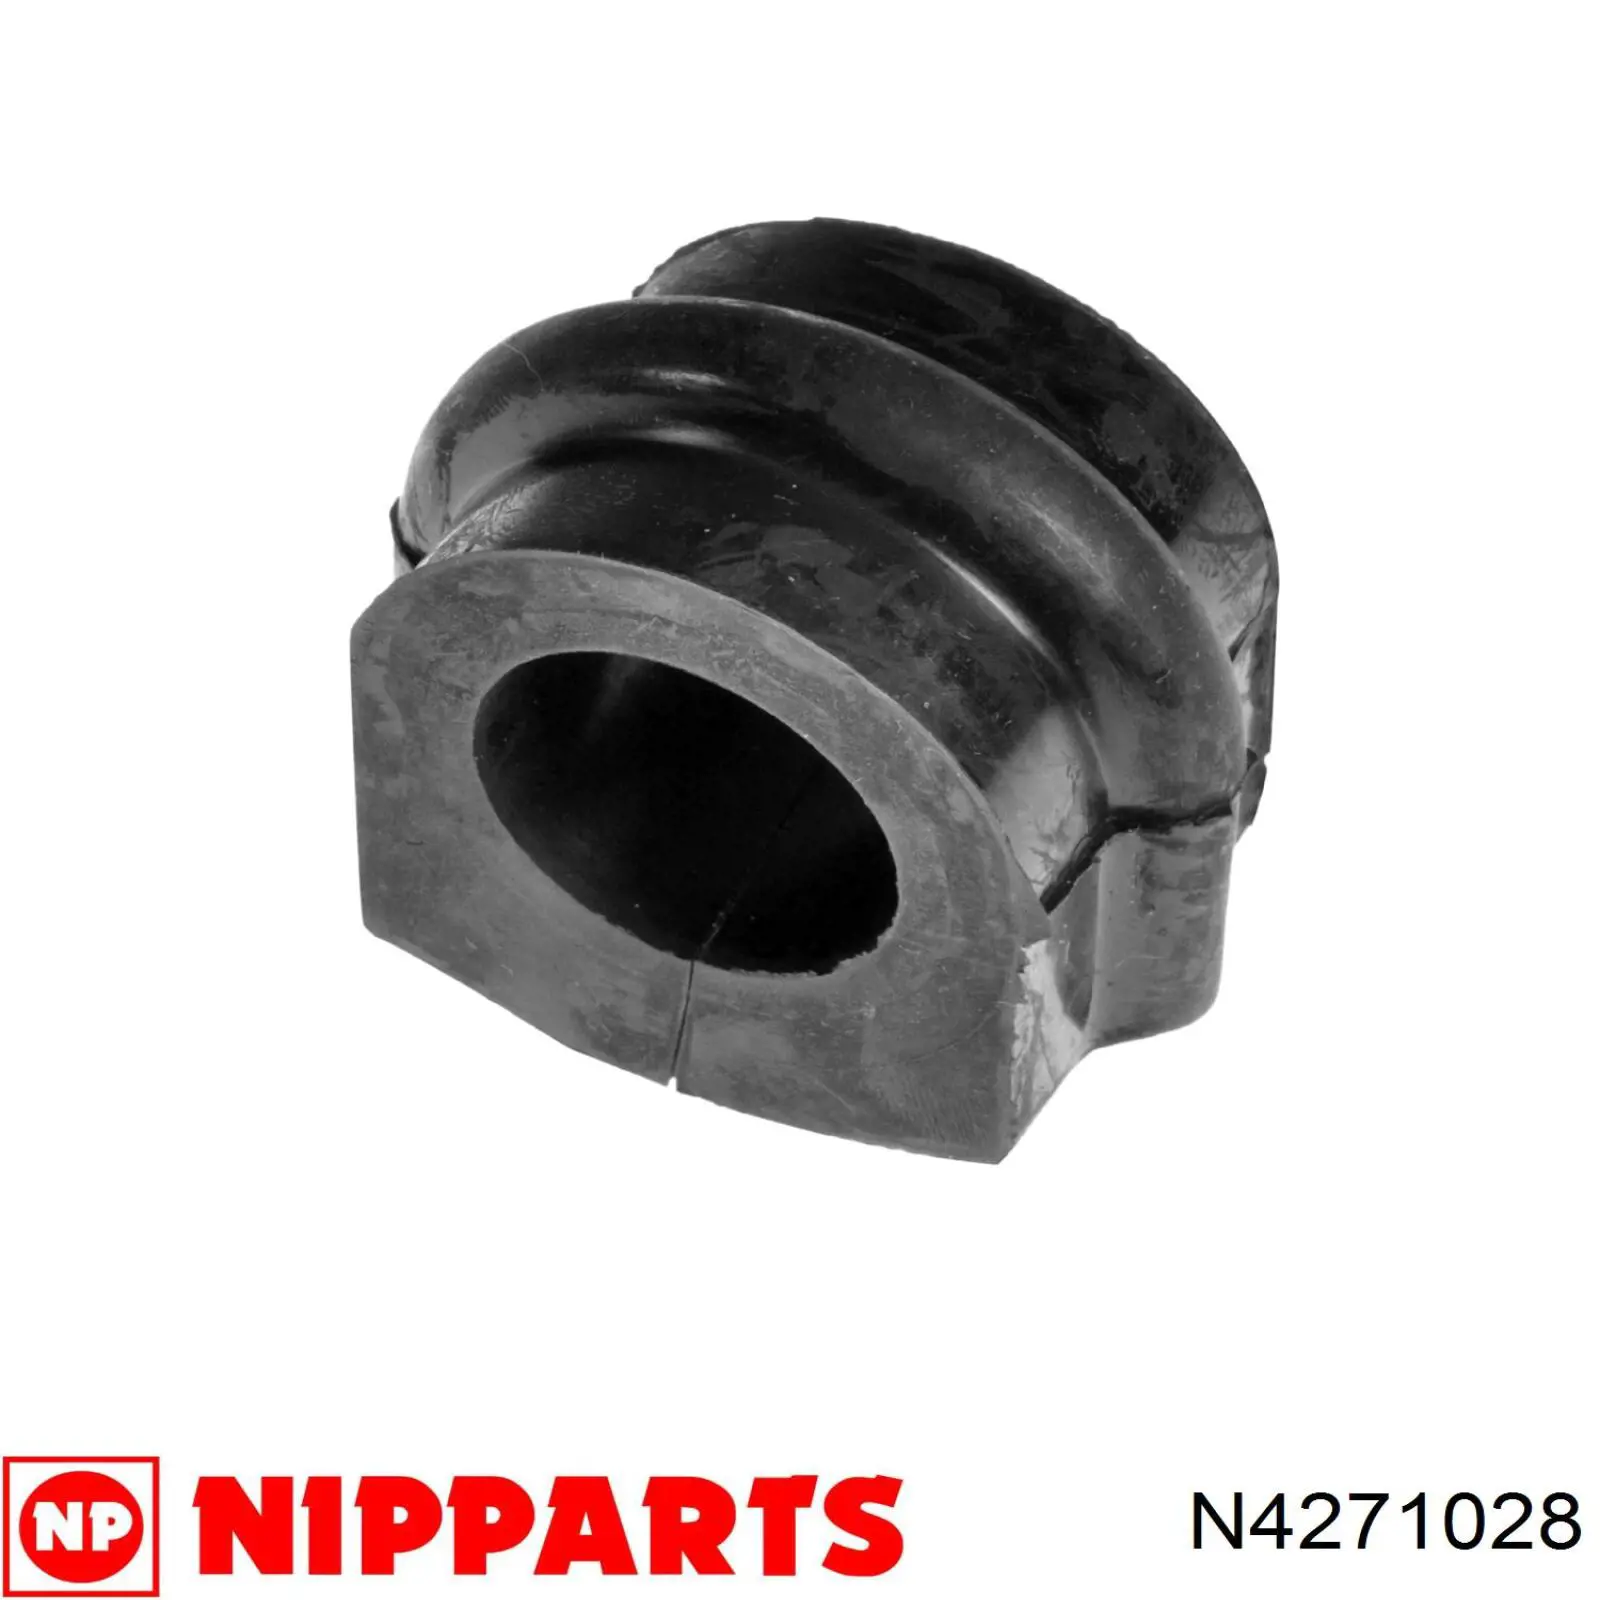 N4271028 Nipparts casquillo de barra estabilizadora delantera